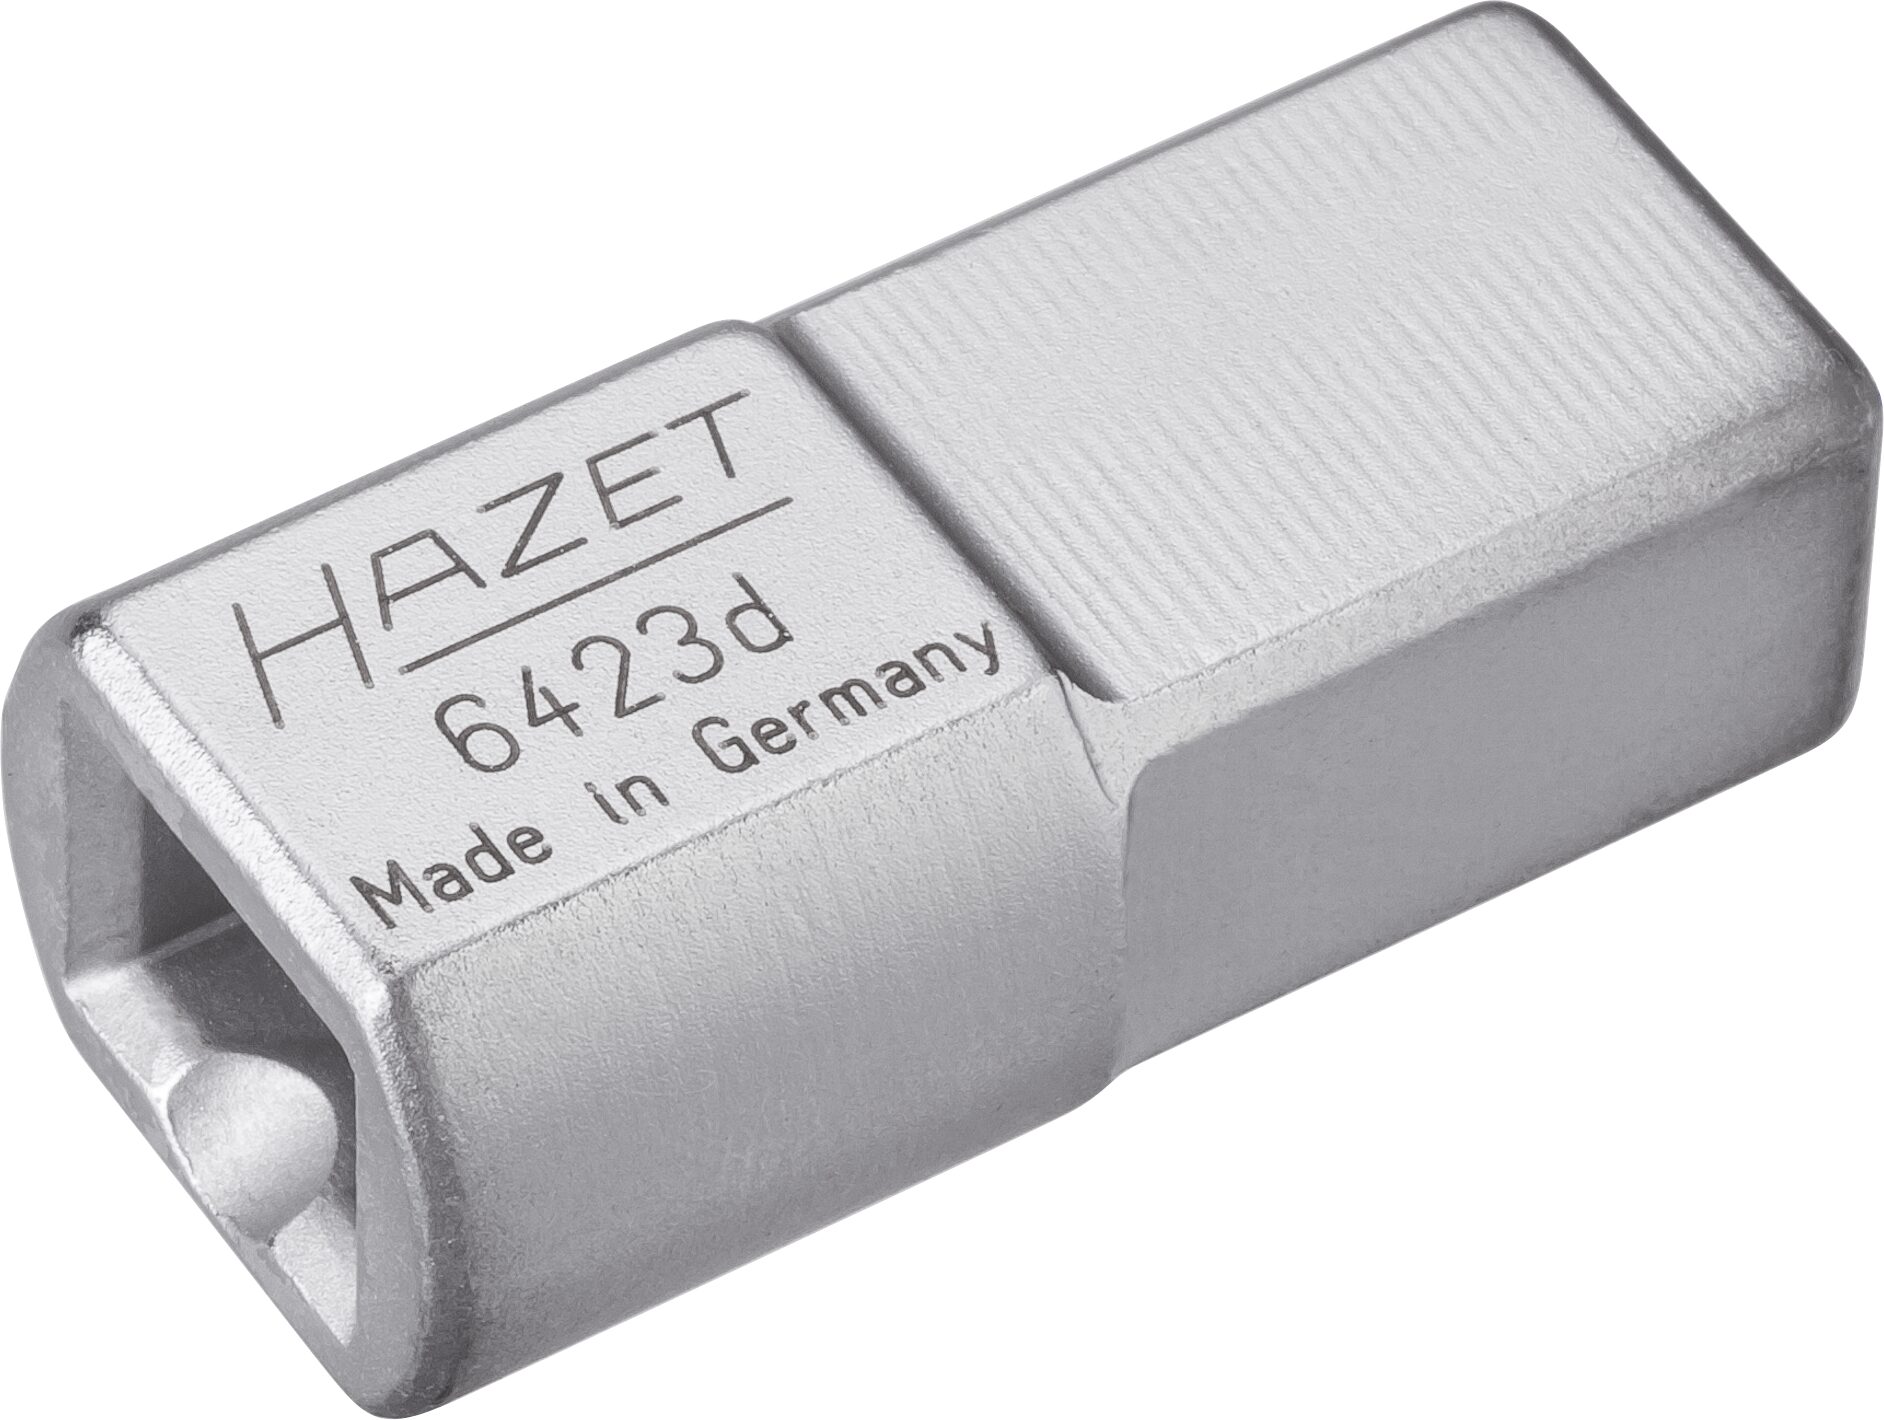 HAZET Einsteck-Adapter 6423D · Einsteck-Vierkant 14 x 18 mm · Einsteck-Vierkant 9 x 12 mm